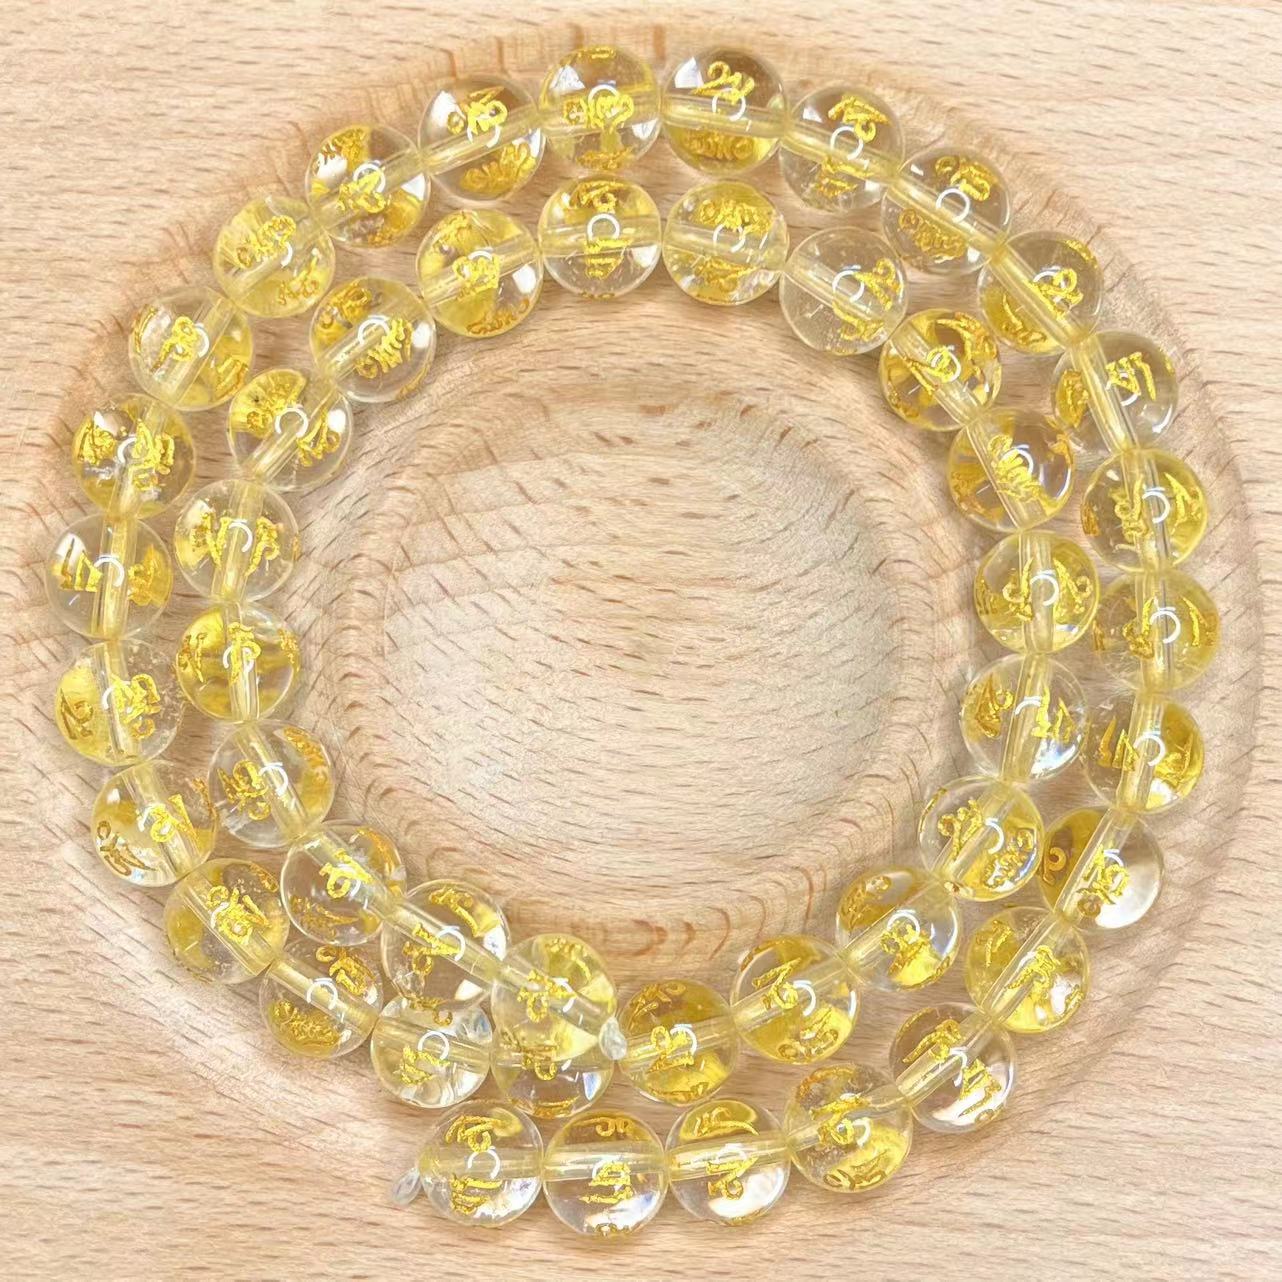 Clear quartz Mantra bead strand 1pc